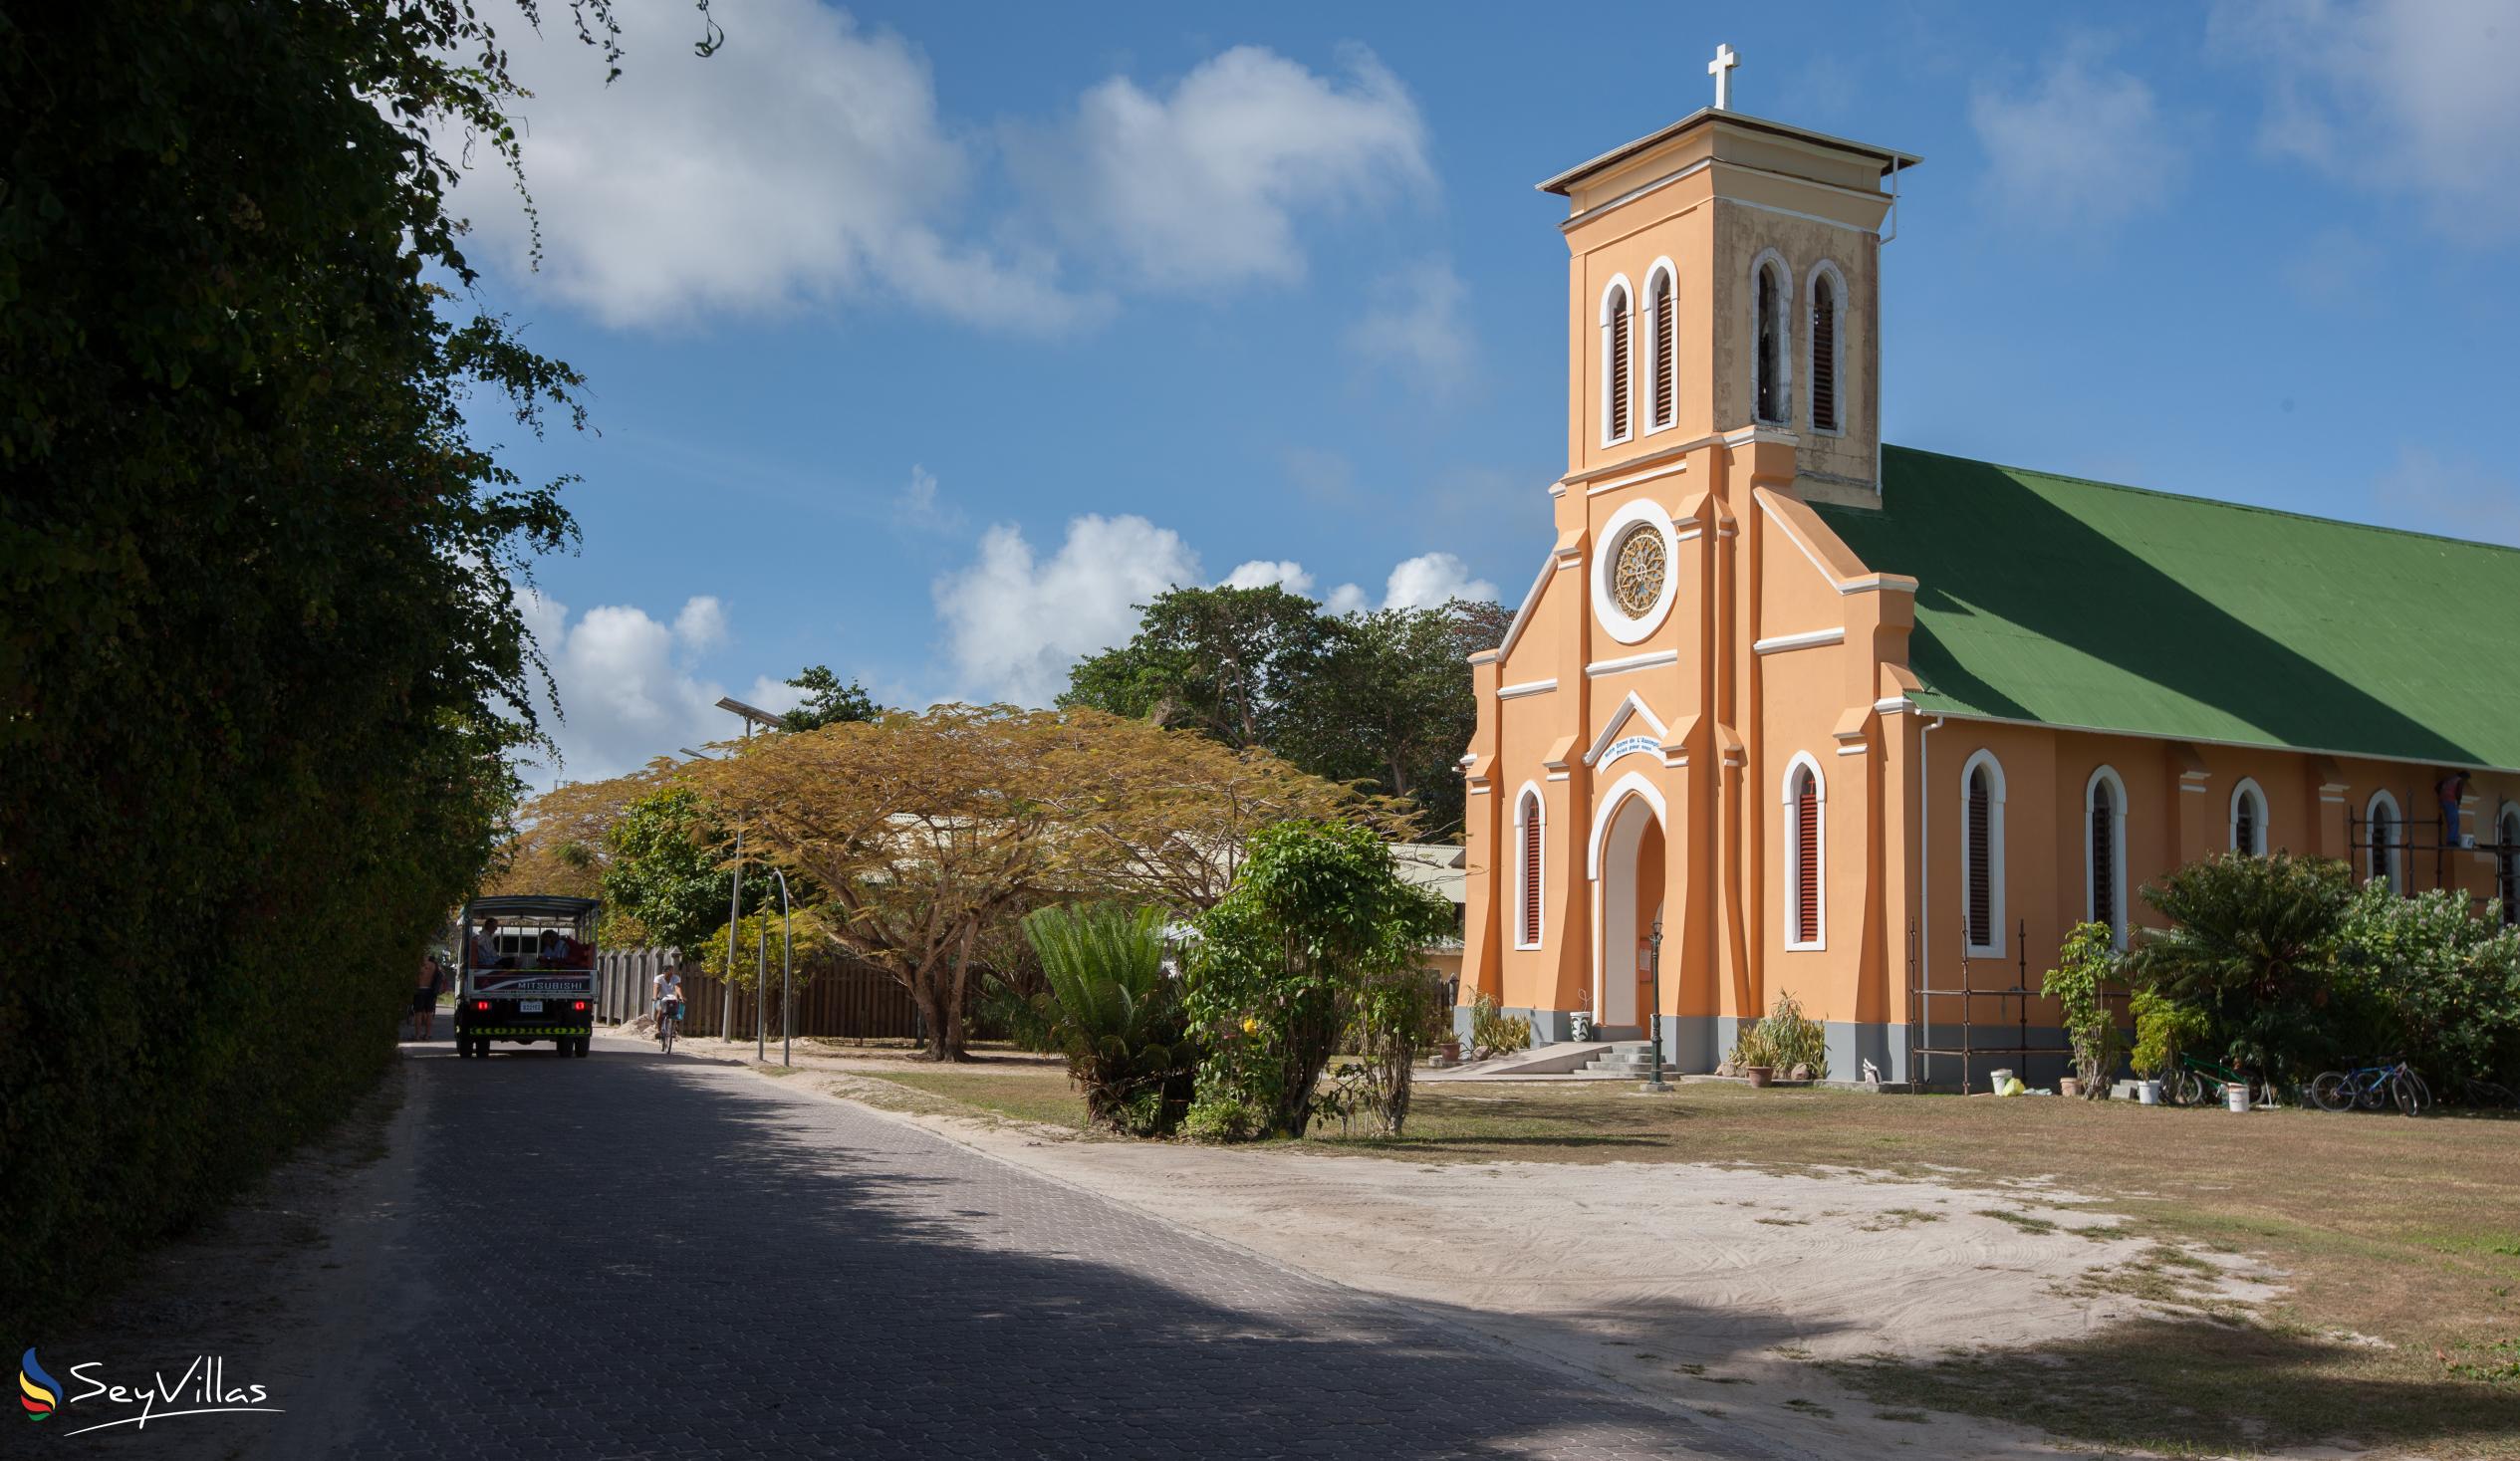 Foto 42: Villa Creole - Posizione - La Digue (Seychelles)